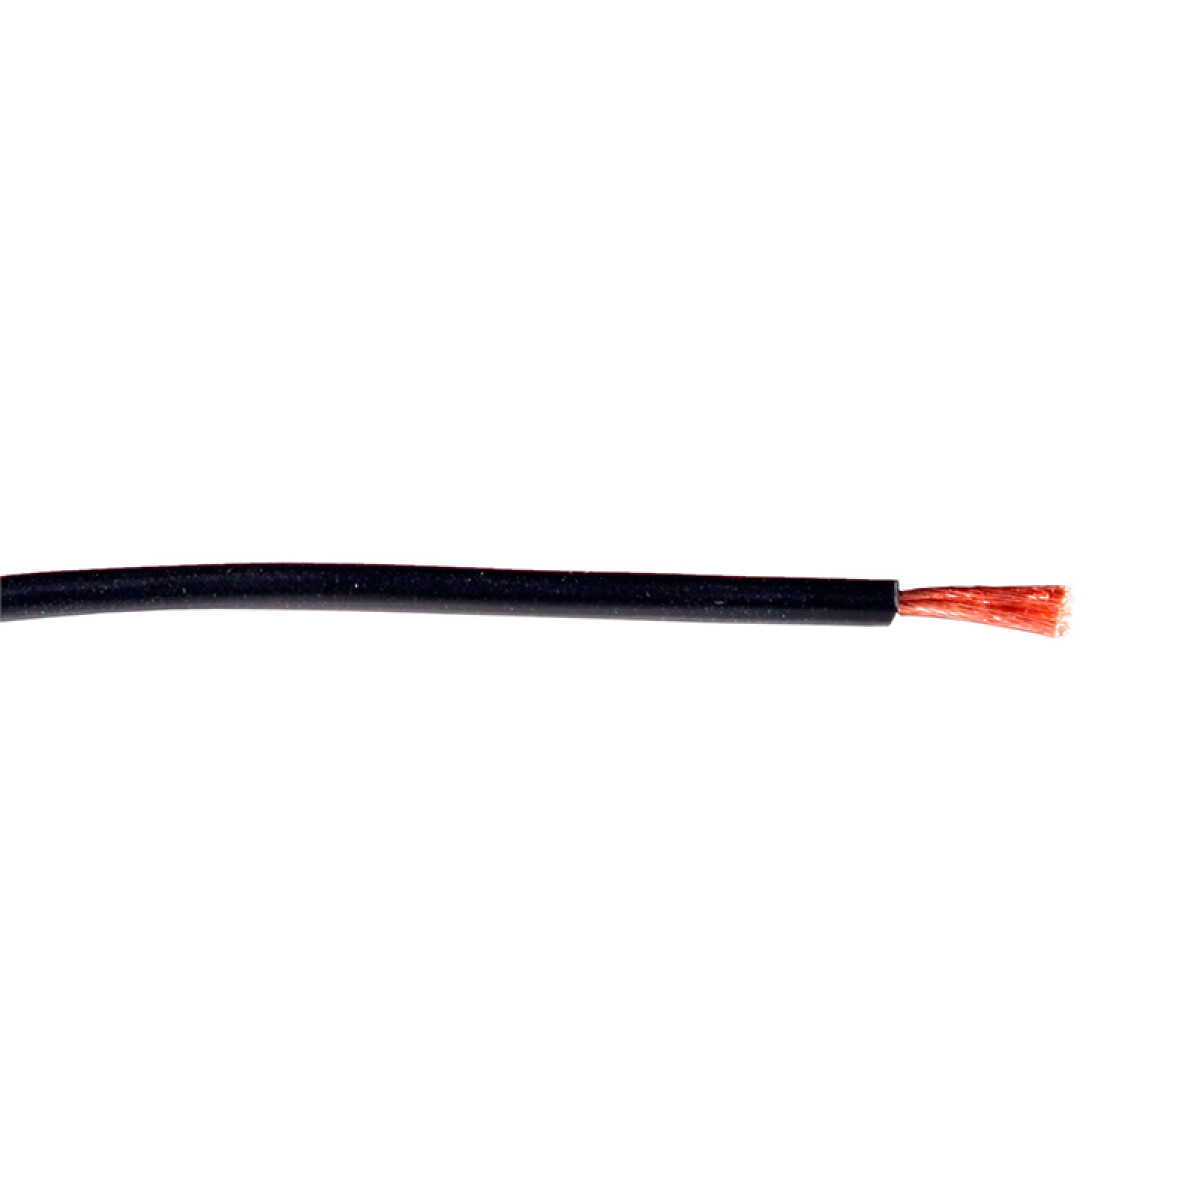 Cable de cobre flexible 2,00mm² negro -Rollo 100mt - C94327 